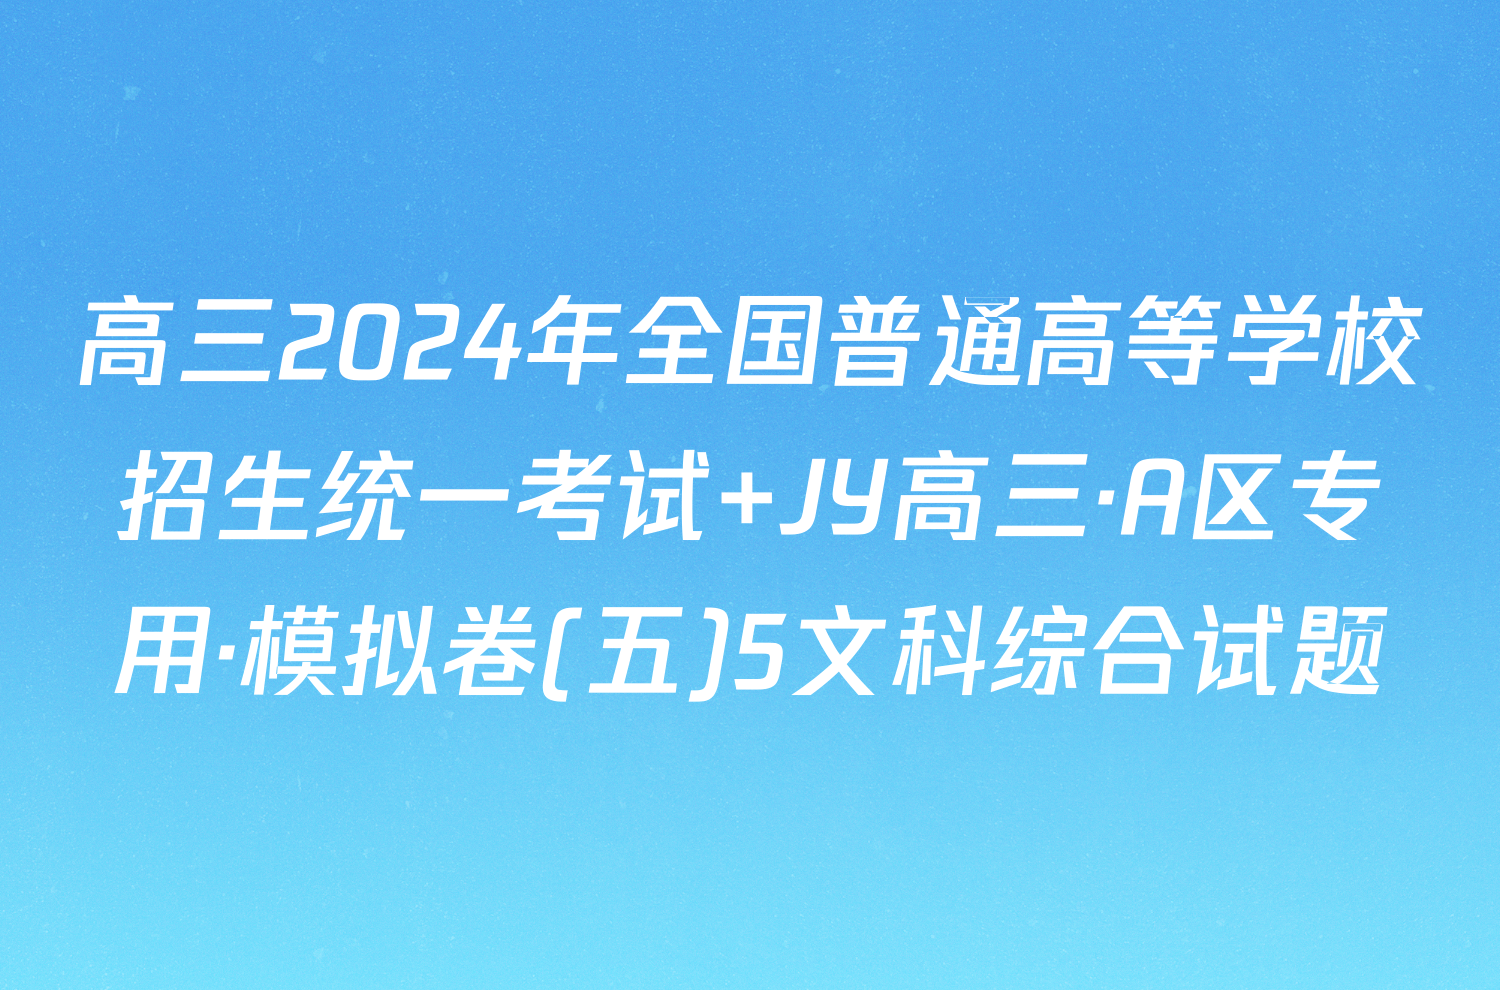 高三2024年全国普通高等学校招生统一考试 JY高三·A区专用·模拟卷(五)5文科综合试题